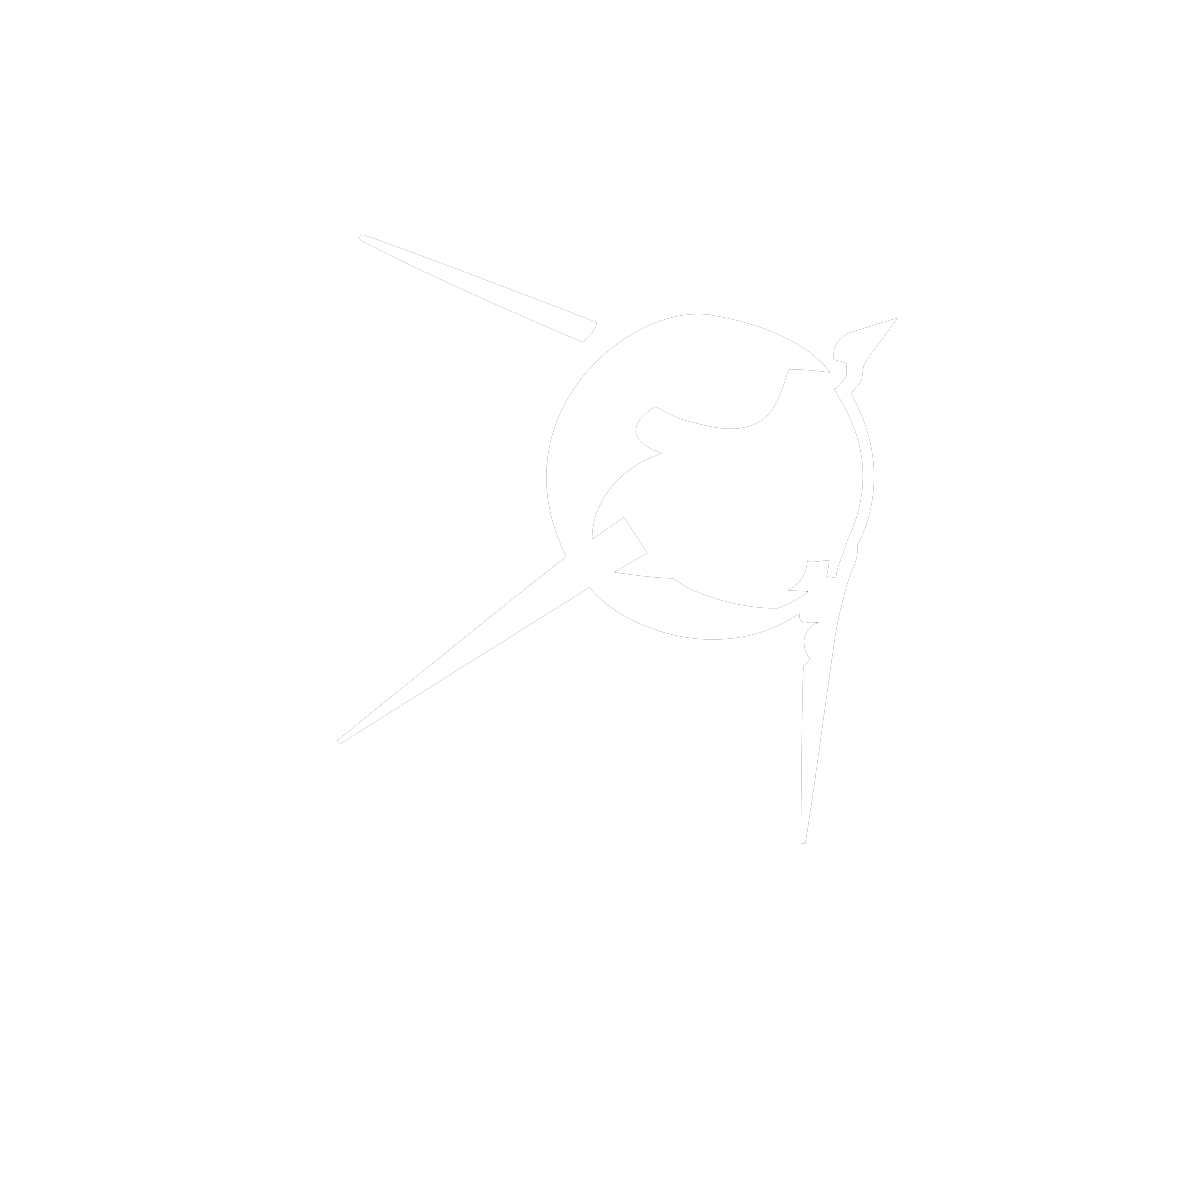 sat media brand